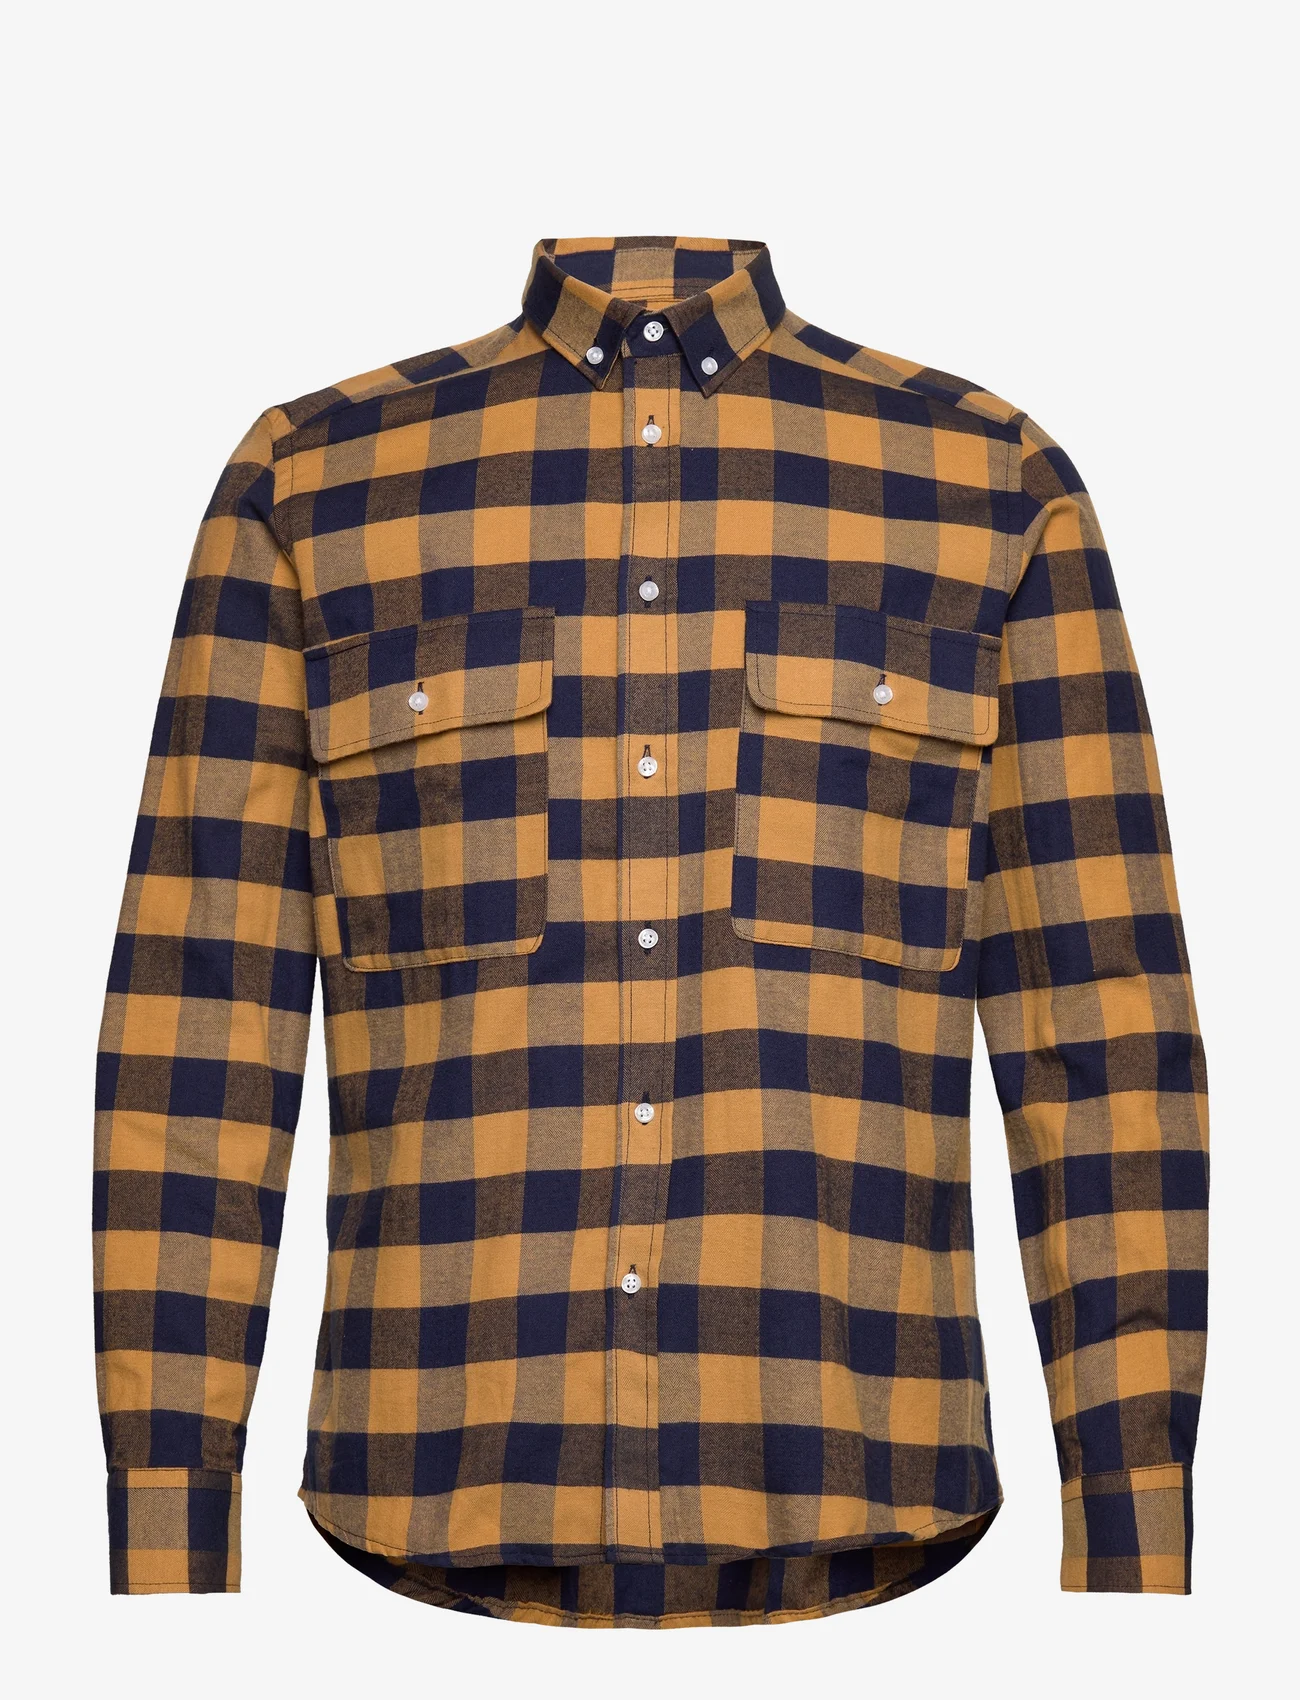 Clean Cut Copenhagen - Sälen Flannel 11 LS - rutiga skjortor - dark khaki - 0